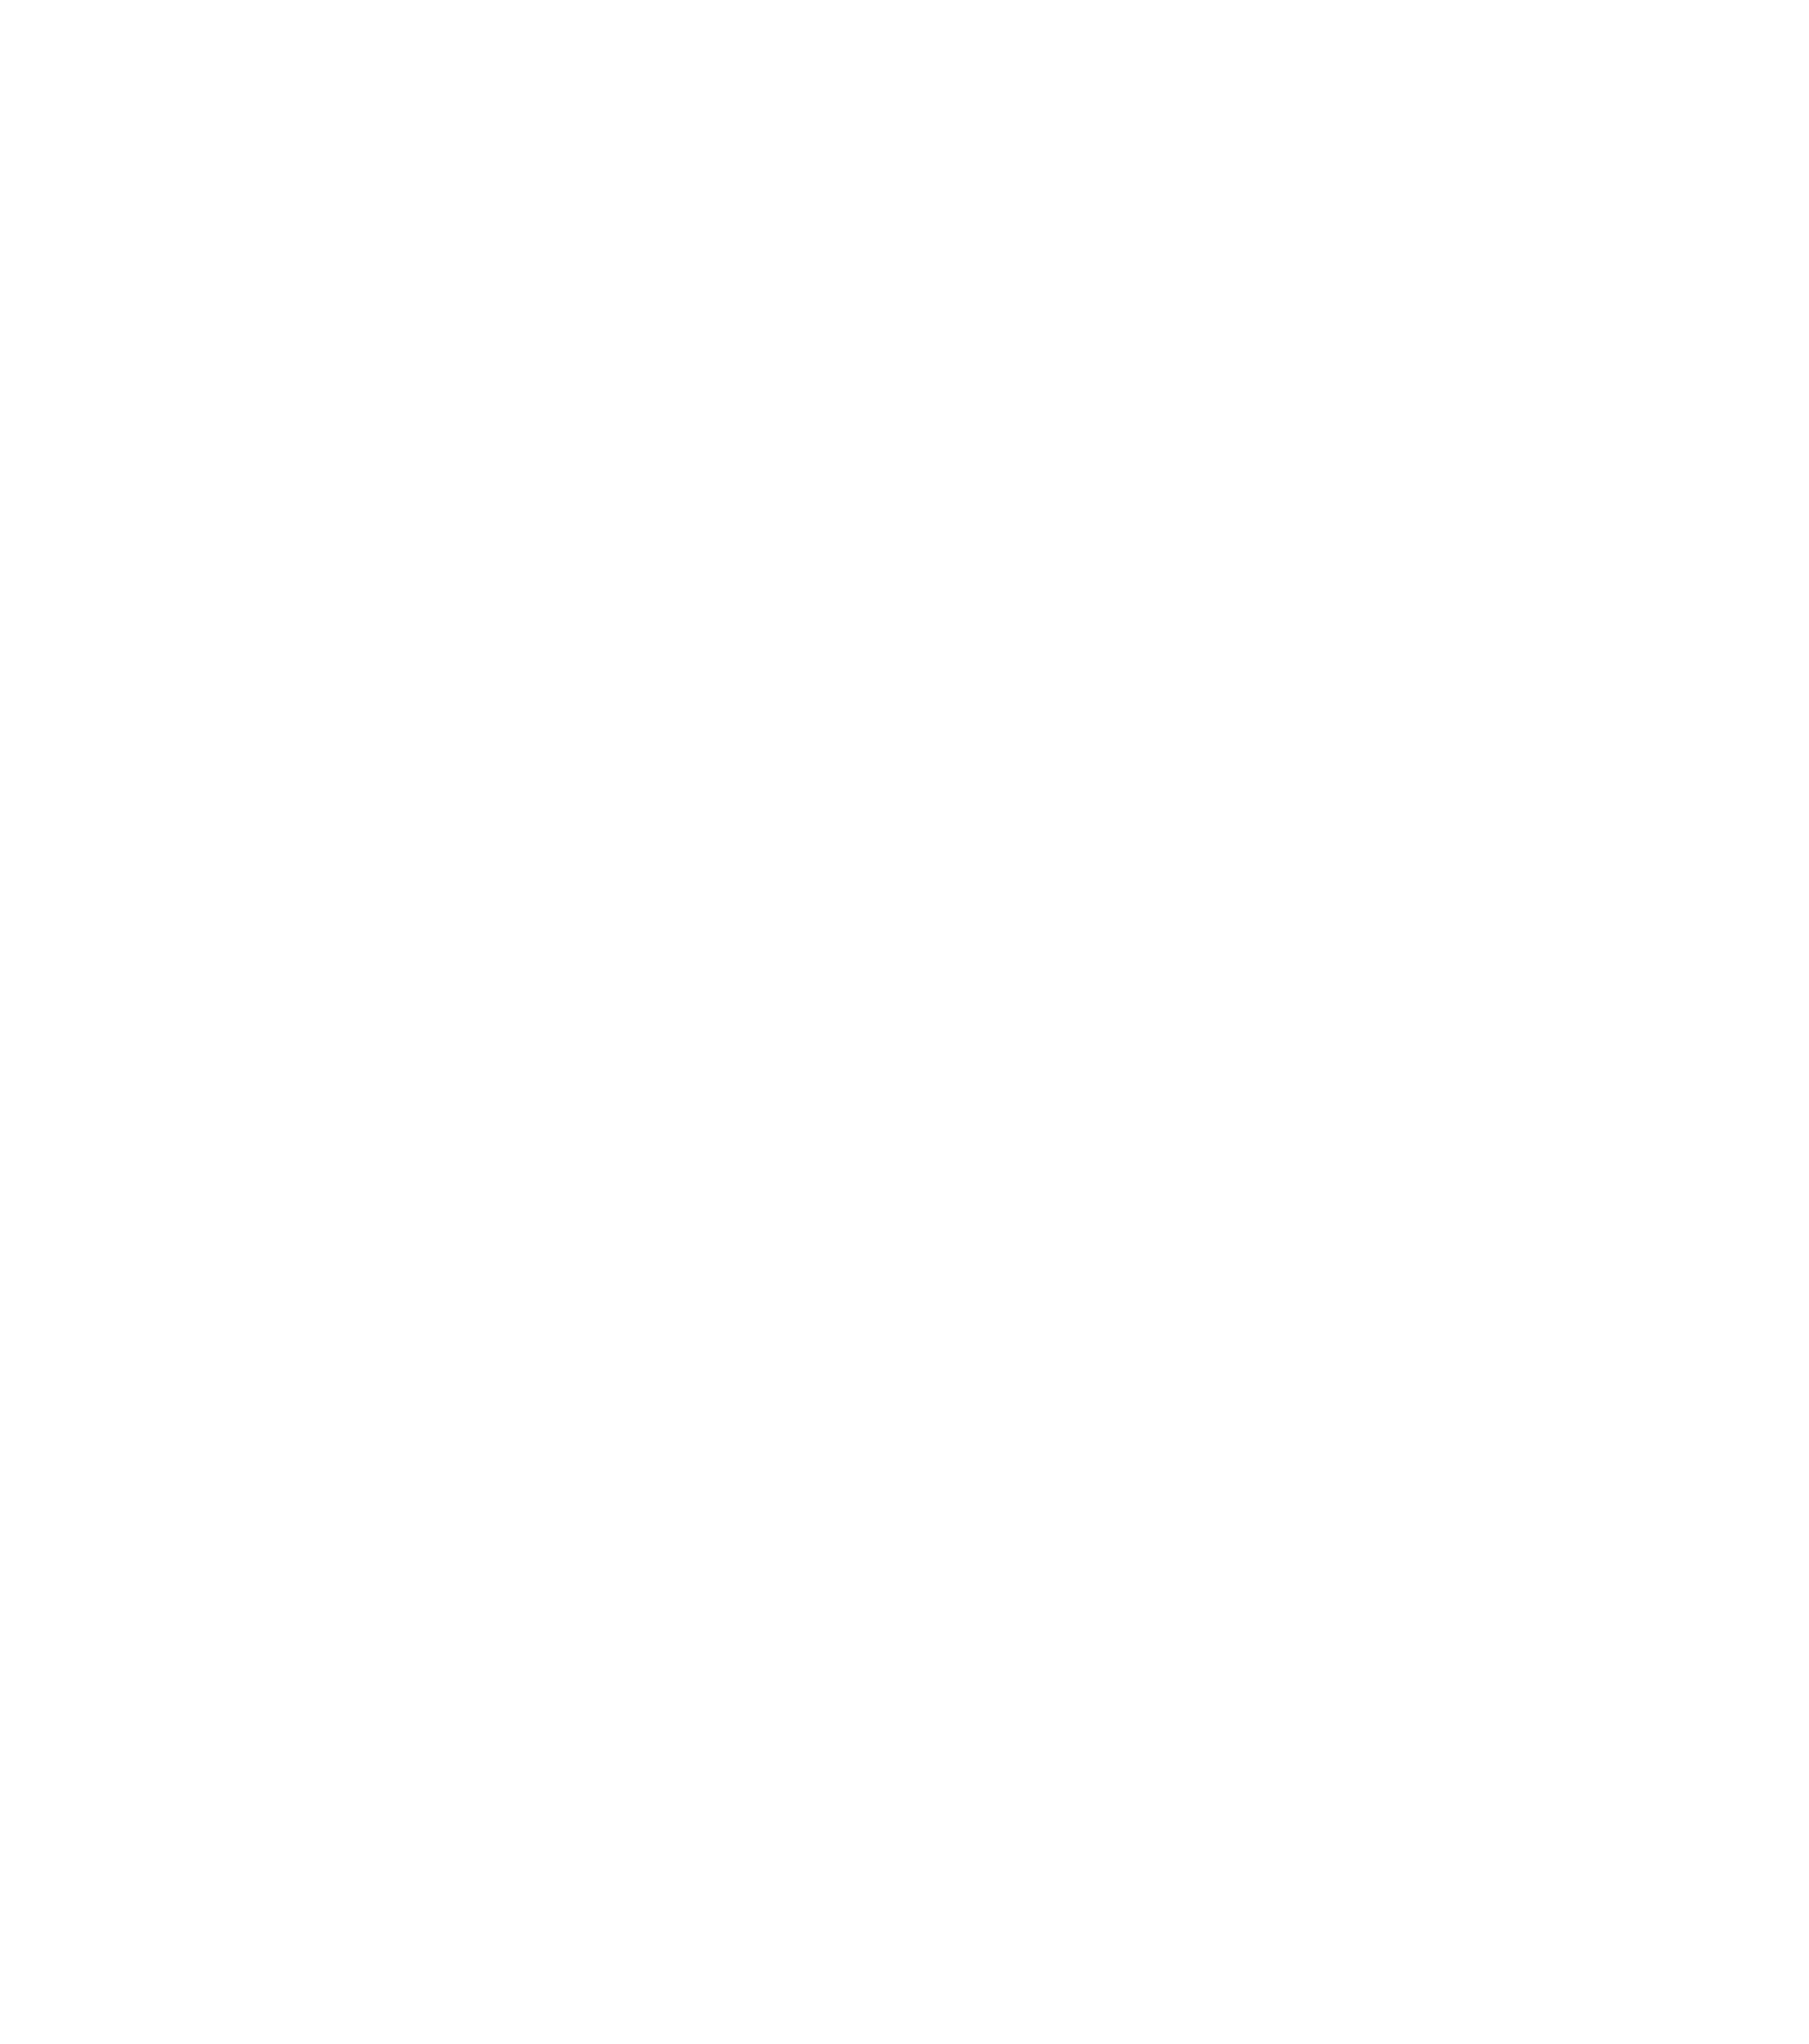 Scotty Dennis